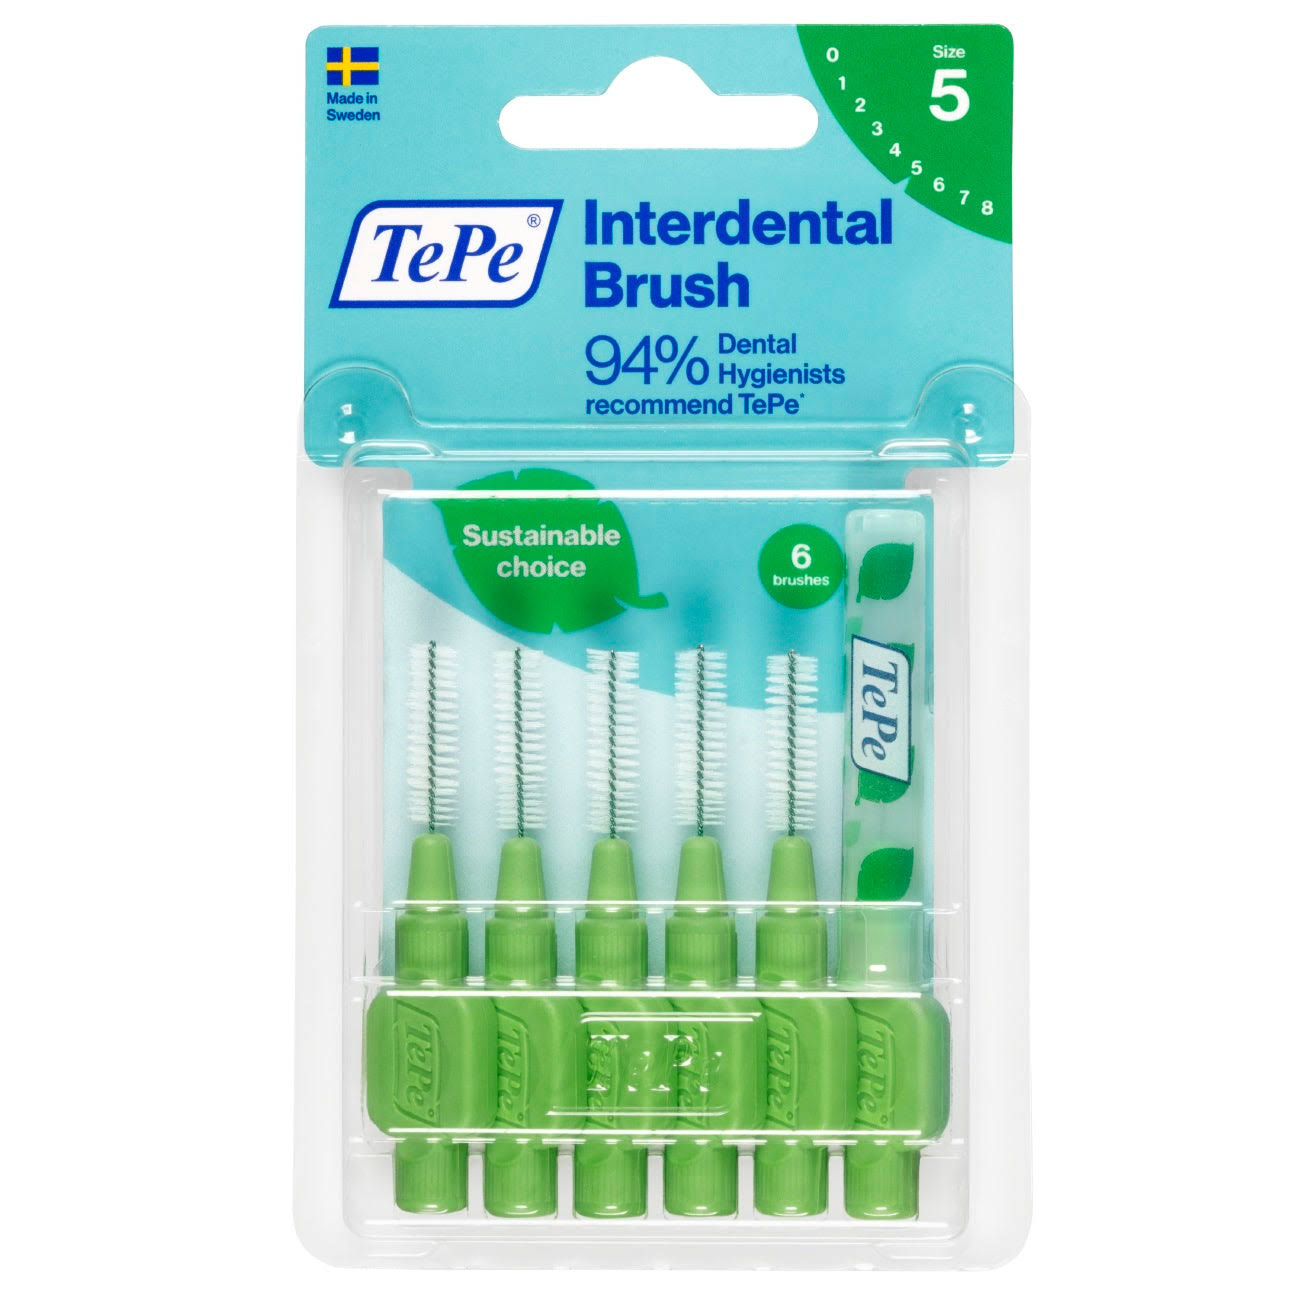 TePe Interdental Brush 0.8mm ISO Size 5